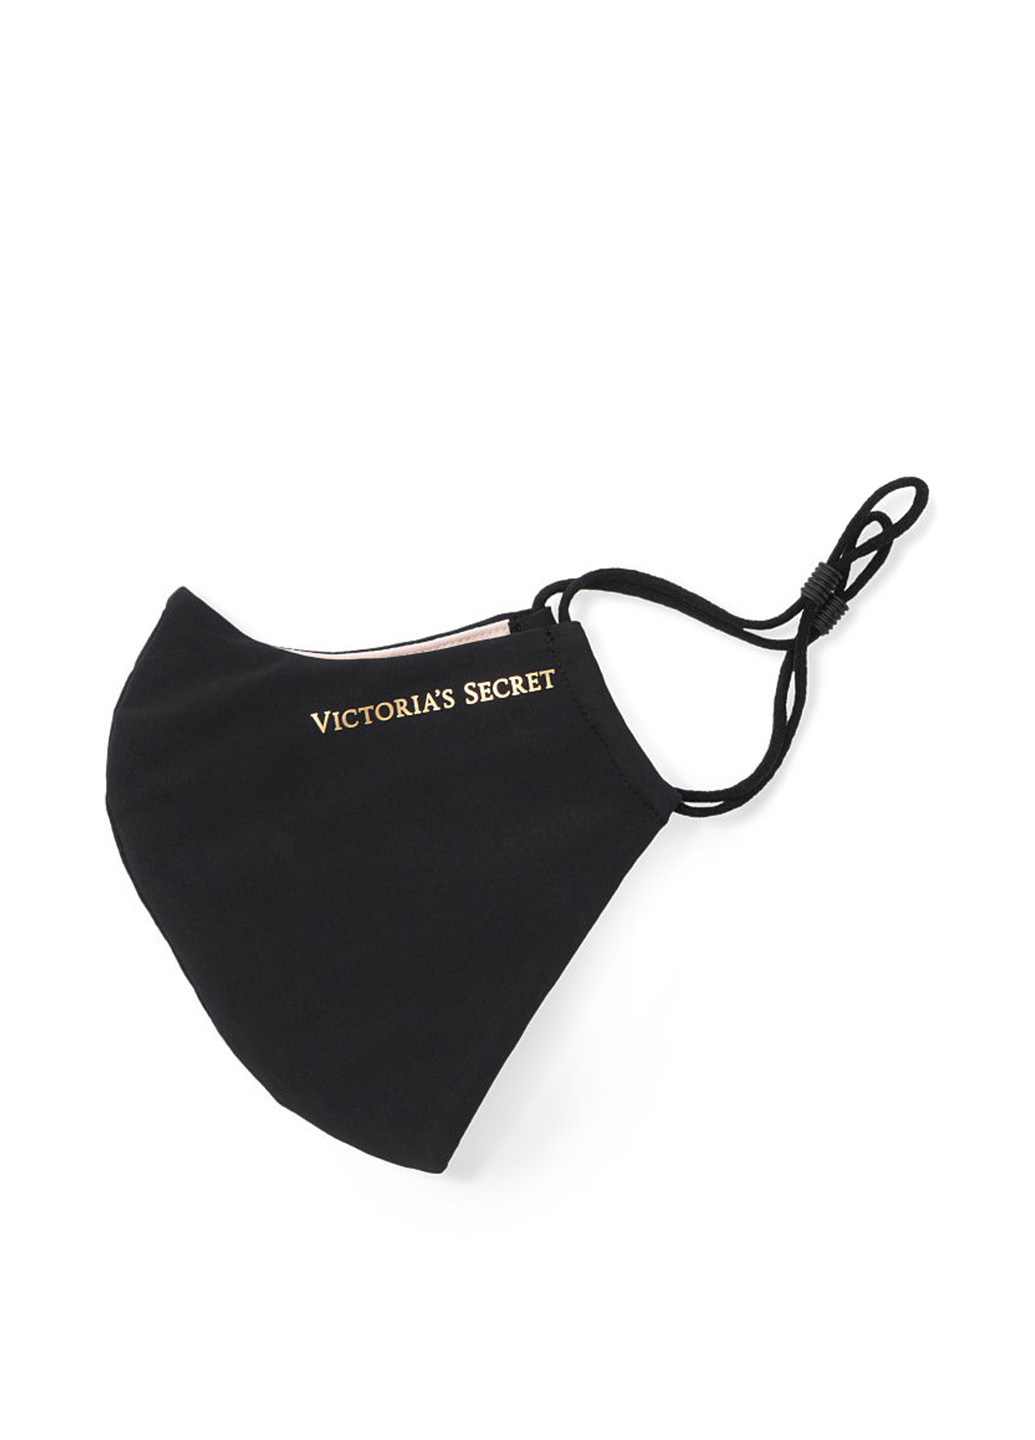 Многоразовая маска Victoria's Secret логотип чёрная